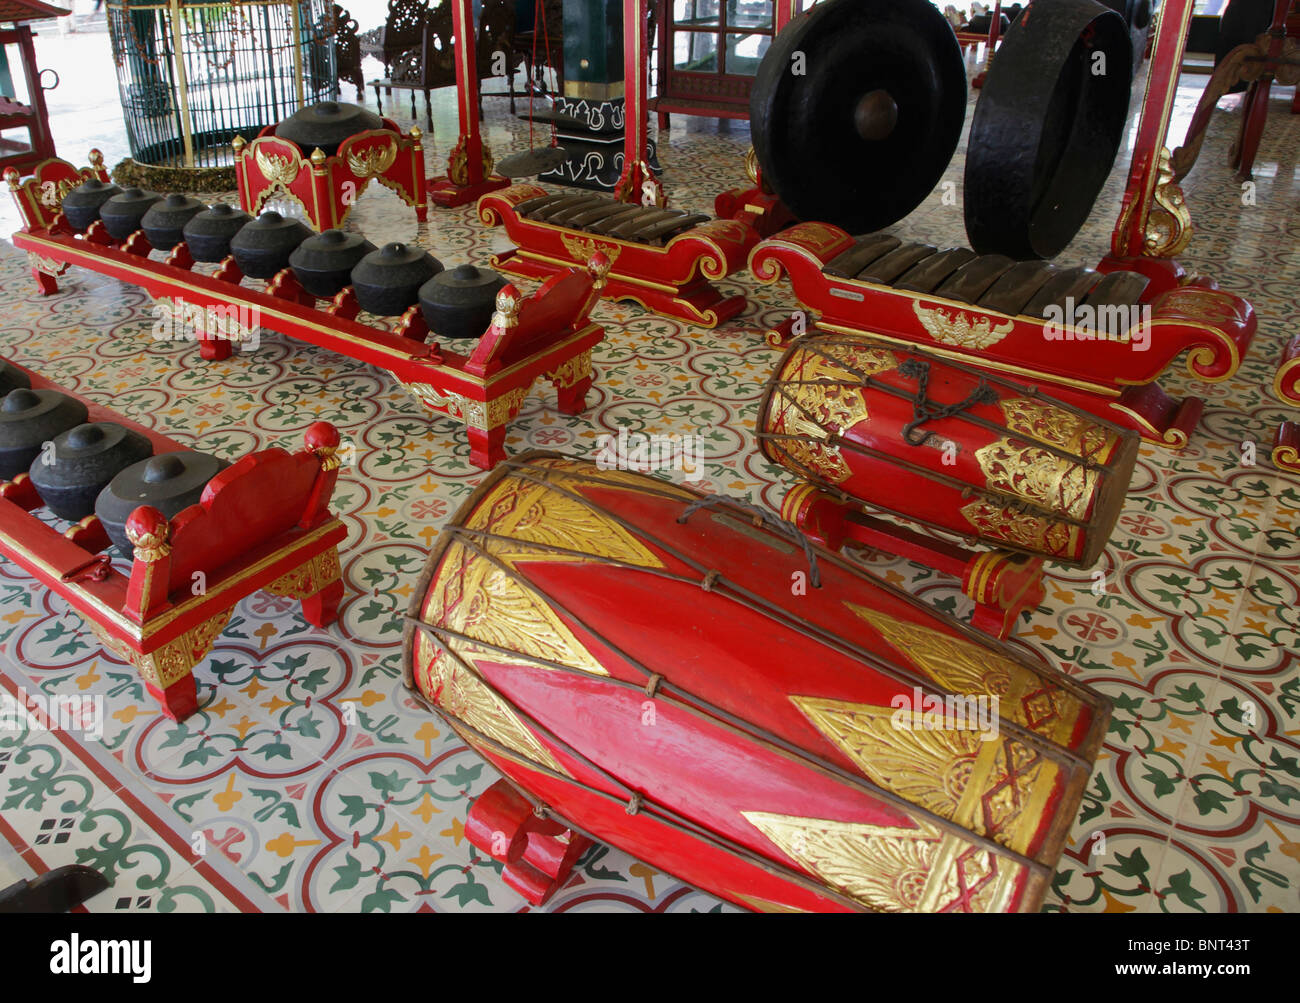 Indonesia; Java; Yogyakarta; traditional musical instruments, gamelan music, Stock Photo